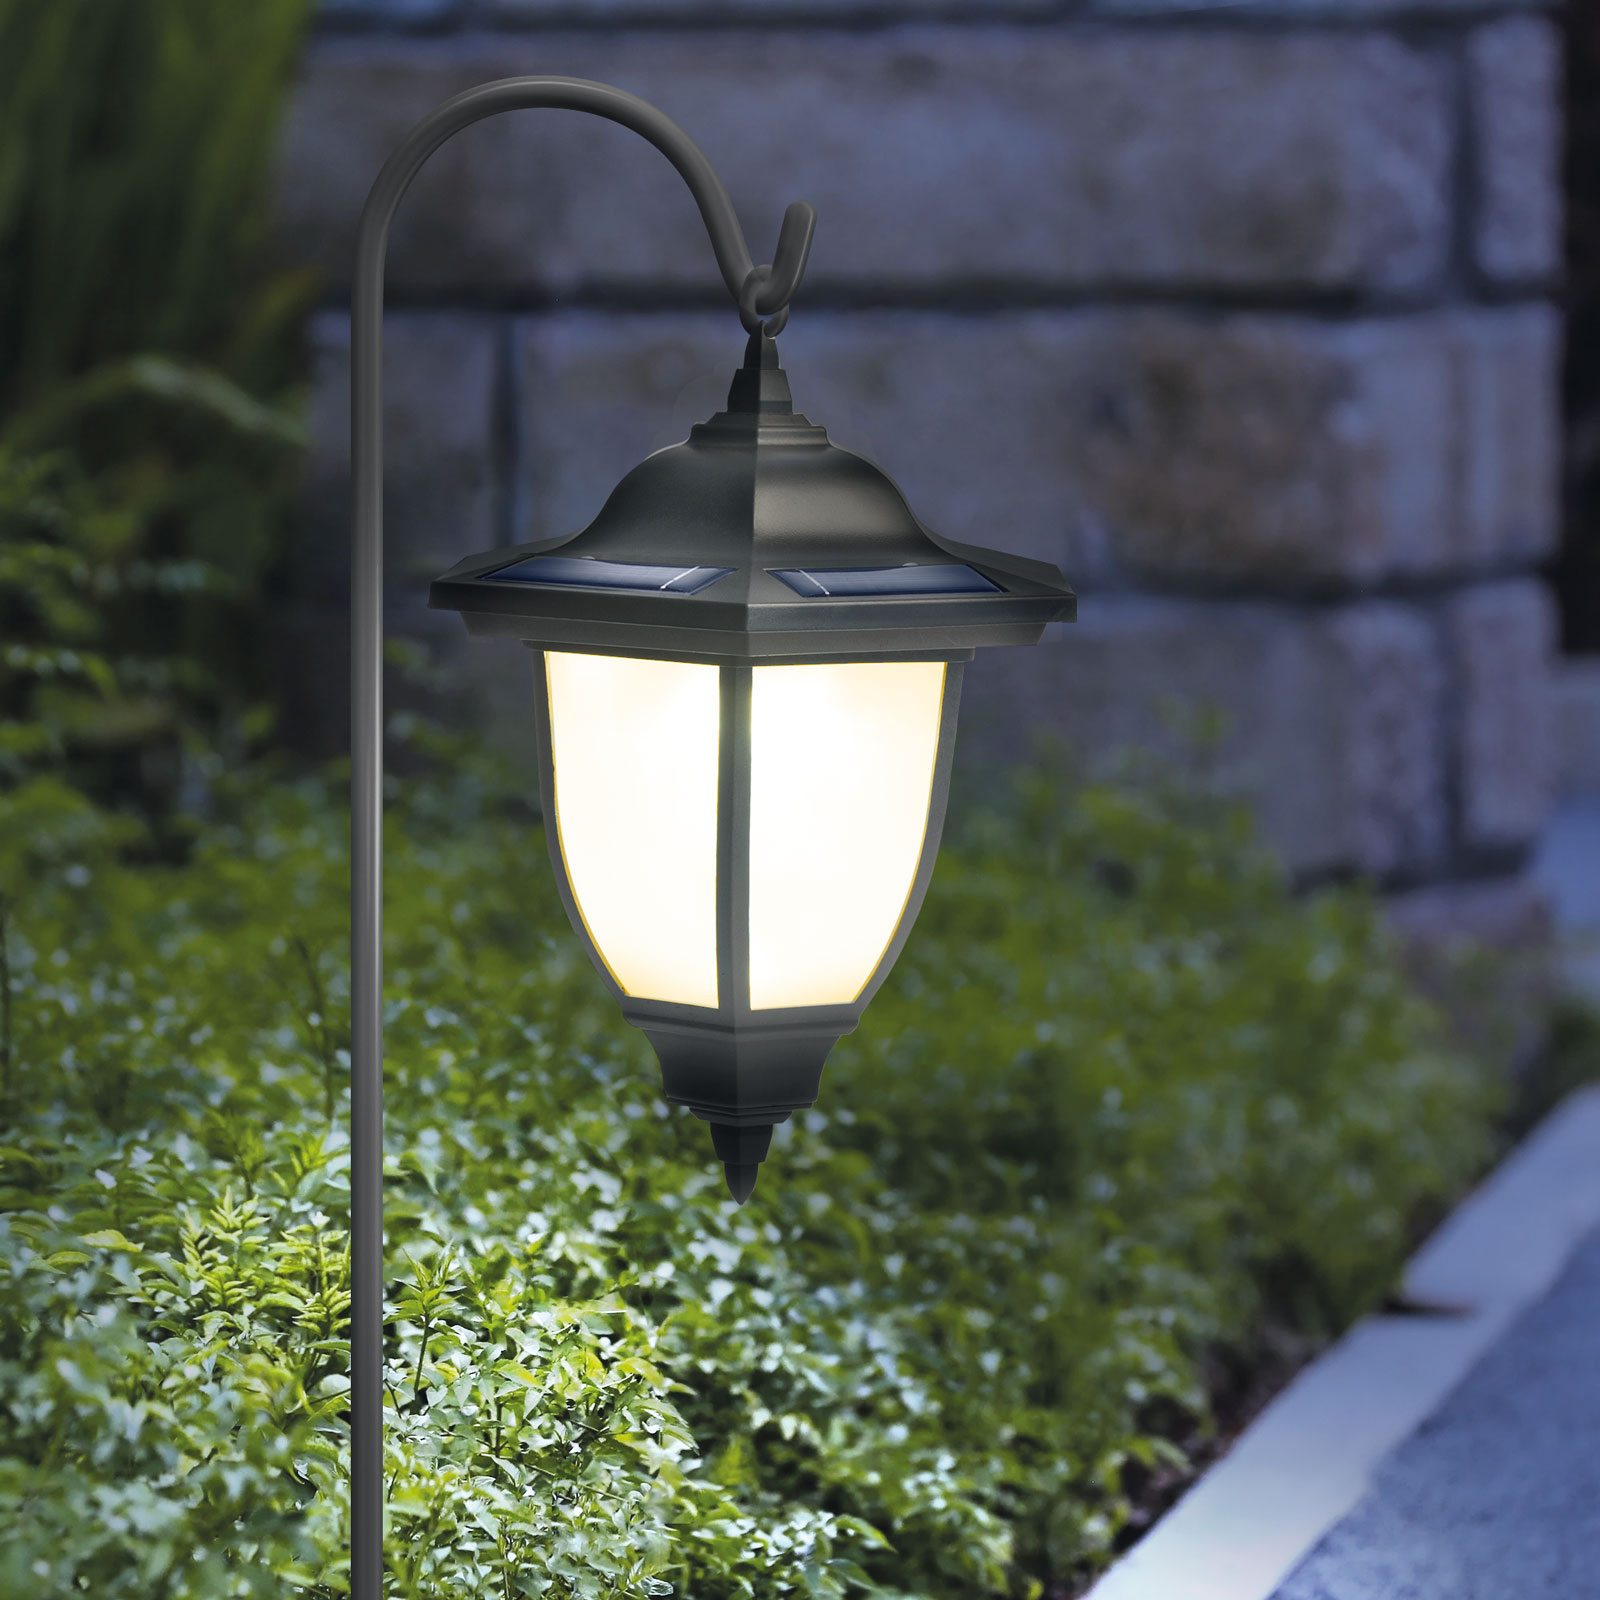 Garden of Eden - Landelijke Tuinlantaarn LED Solar op Prikspot - Tuinverlichting / - Zwart - Windlicht Lantaarn op - 1 stuk Hangende Lamp voor Buiten op Standaard - HomeShopXL